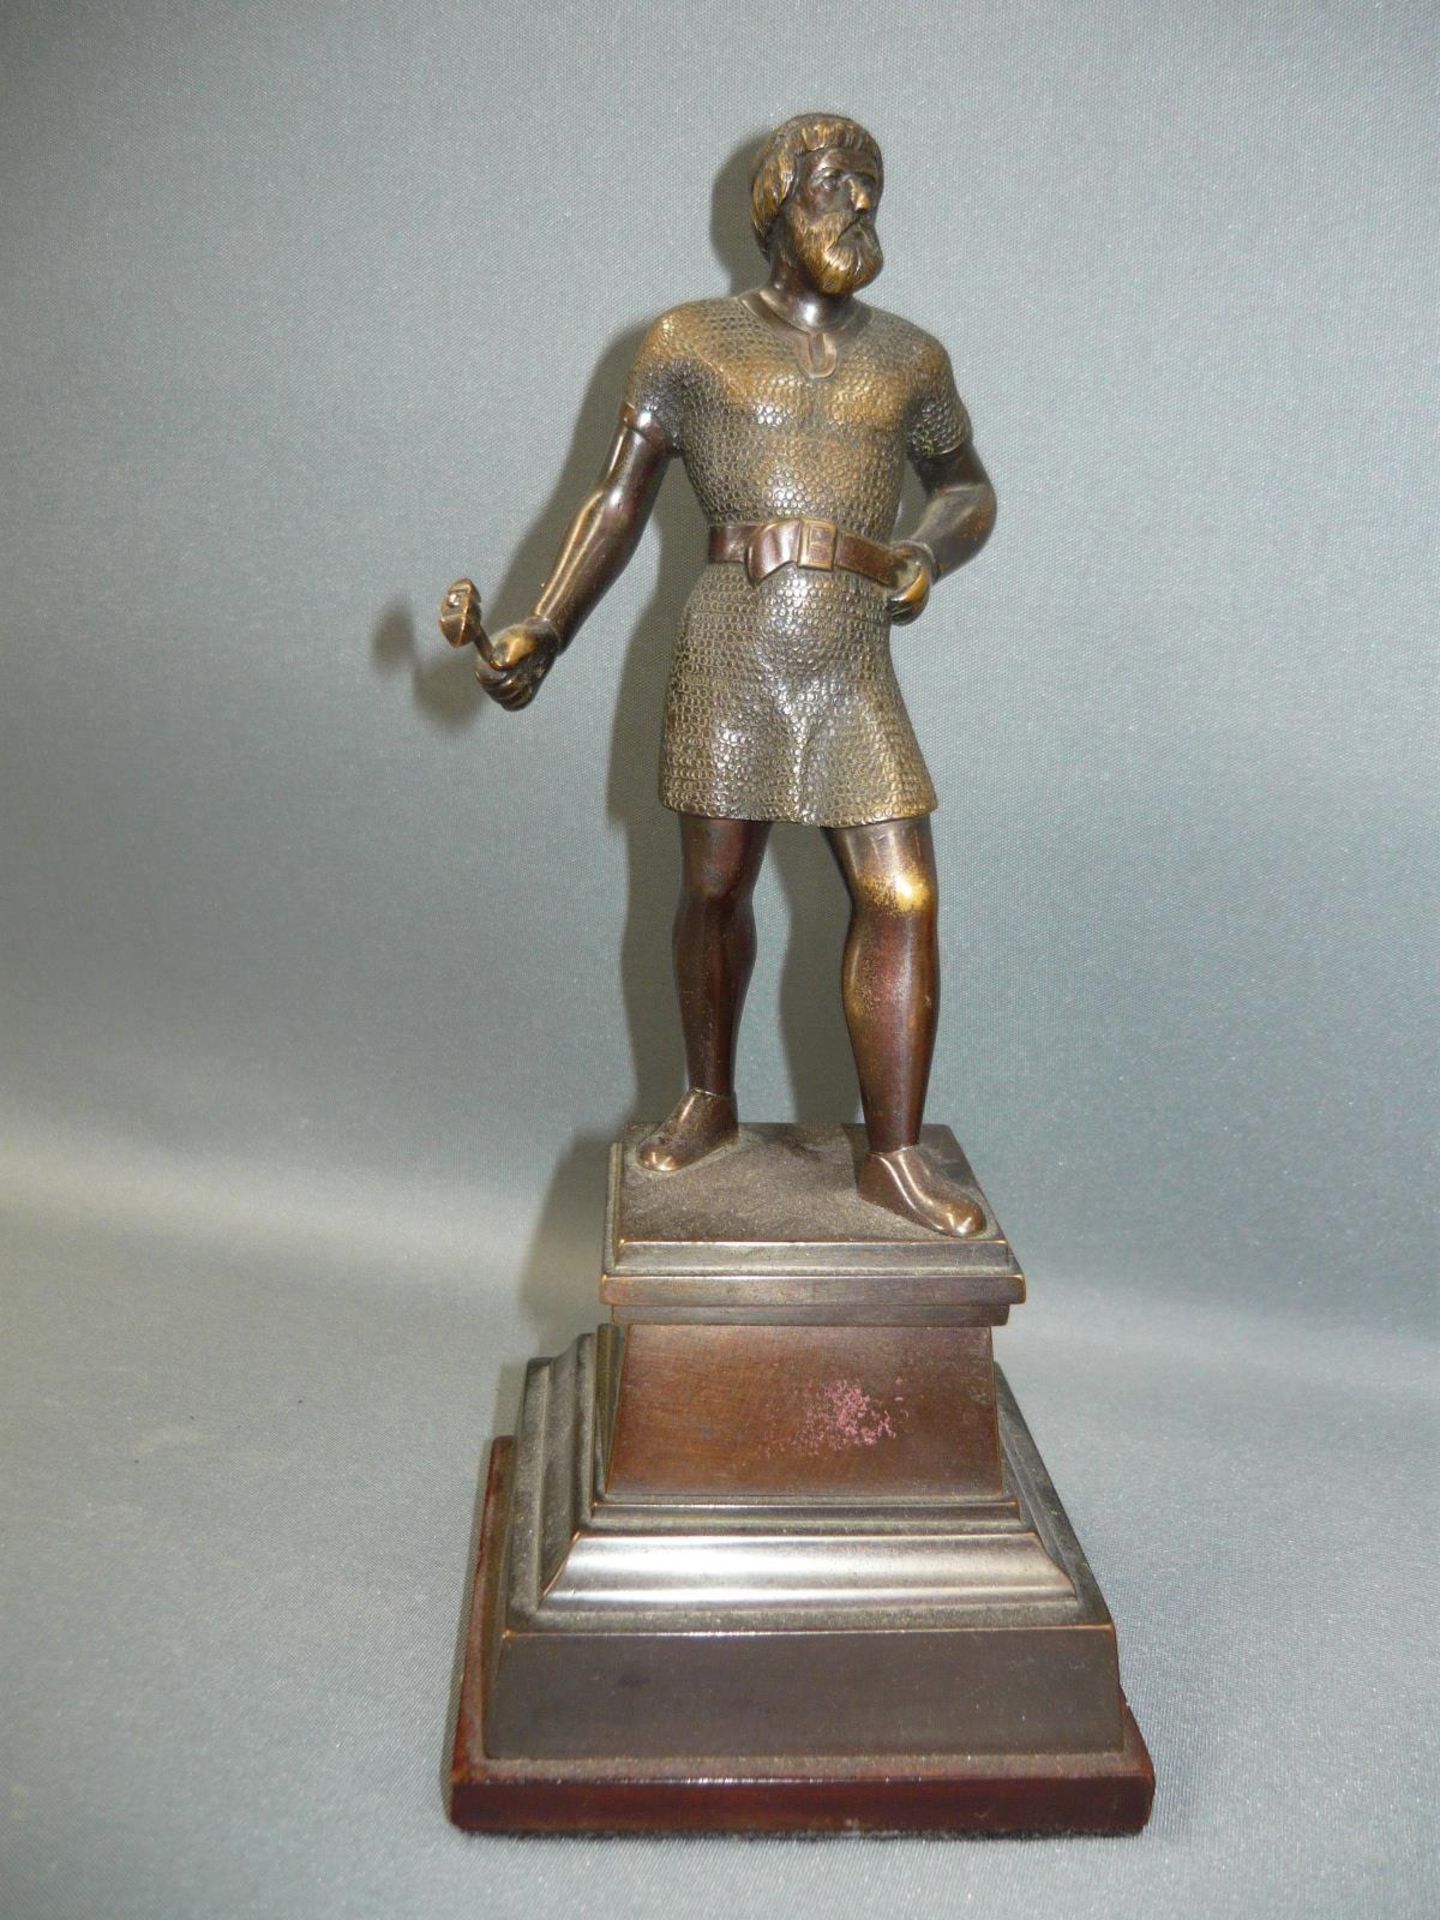 Stehender Wikinger mit Hammer in Kettengewand. Bronze auf Metallsockel. 20.Jhdt. H. 21cm.